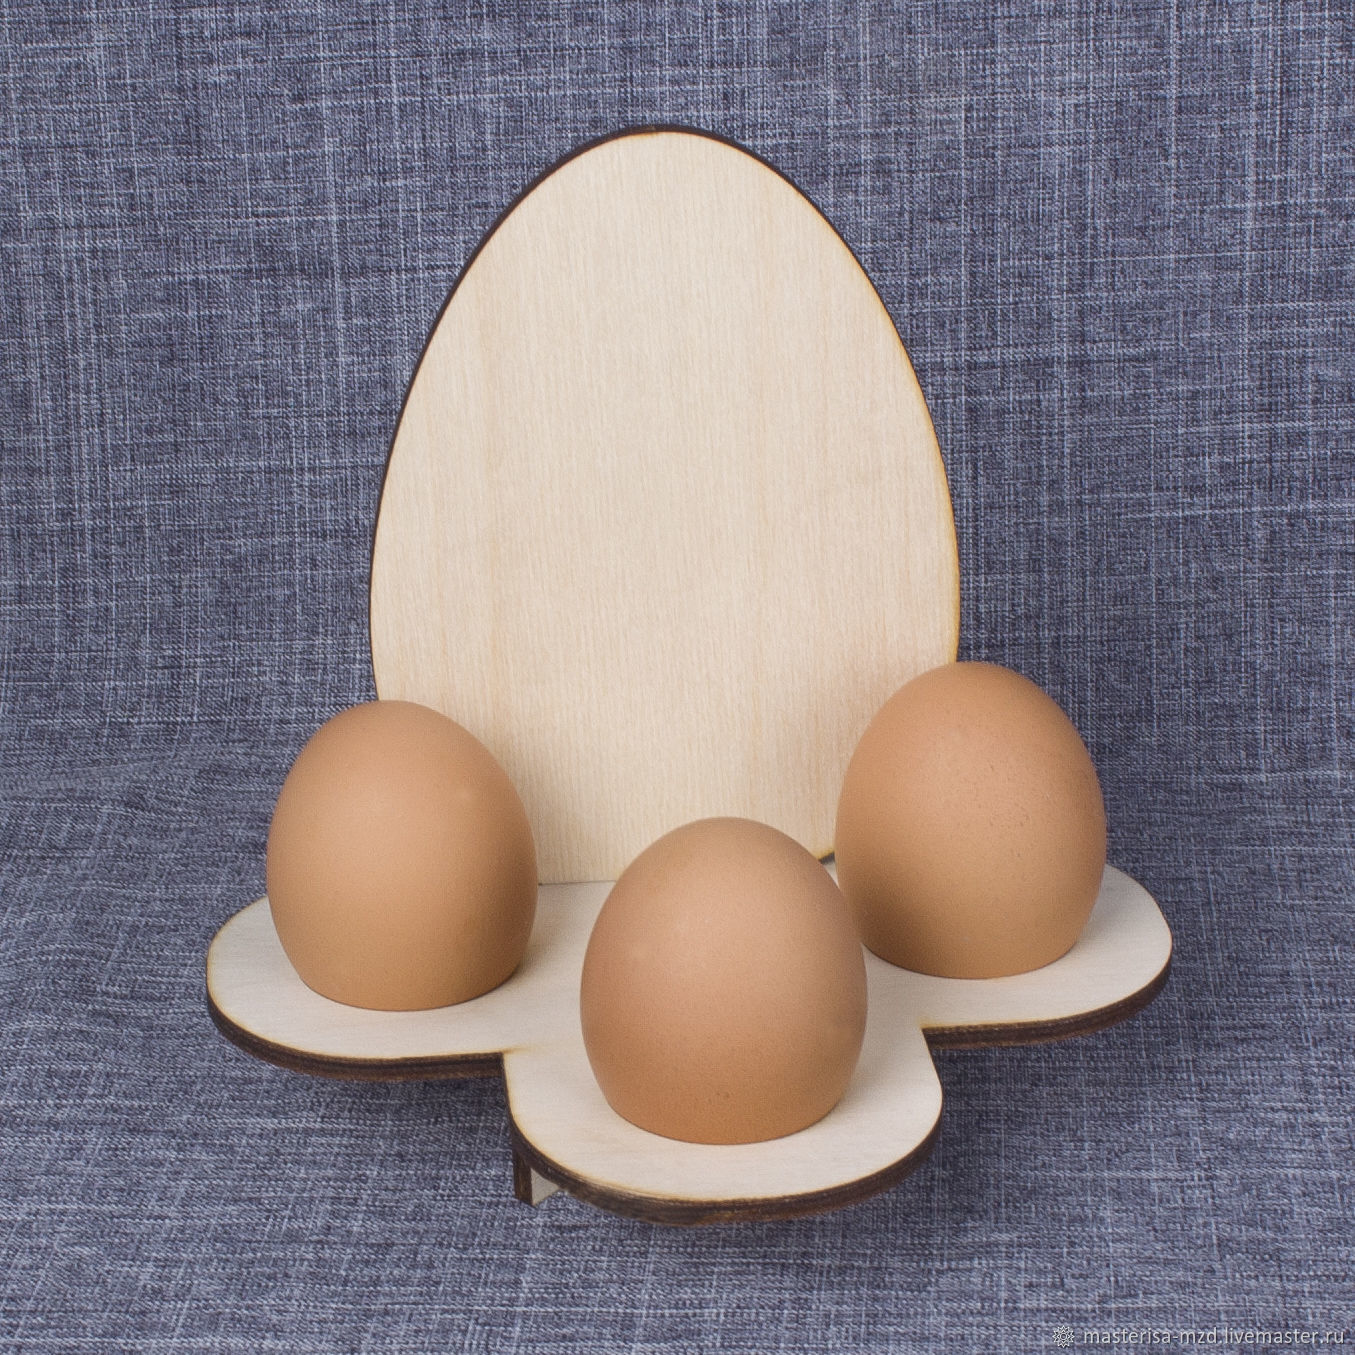 Подставка для яиц на пасху своими руками. Подставка для яиц. Пасхальная подставка для яйца. Деревянная подставка для пасхальных яиц. Заготовка для декупажа яйцо.